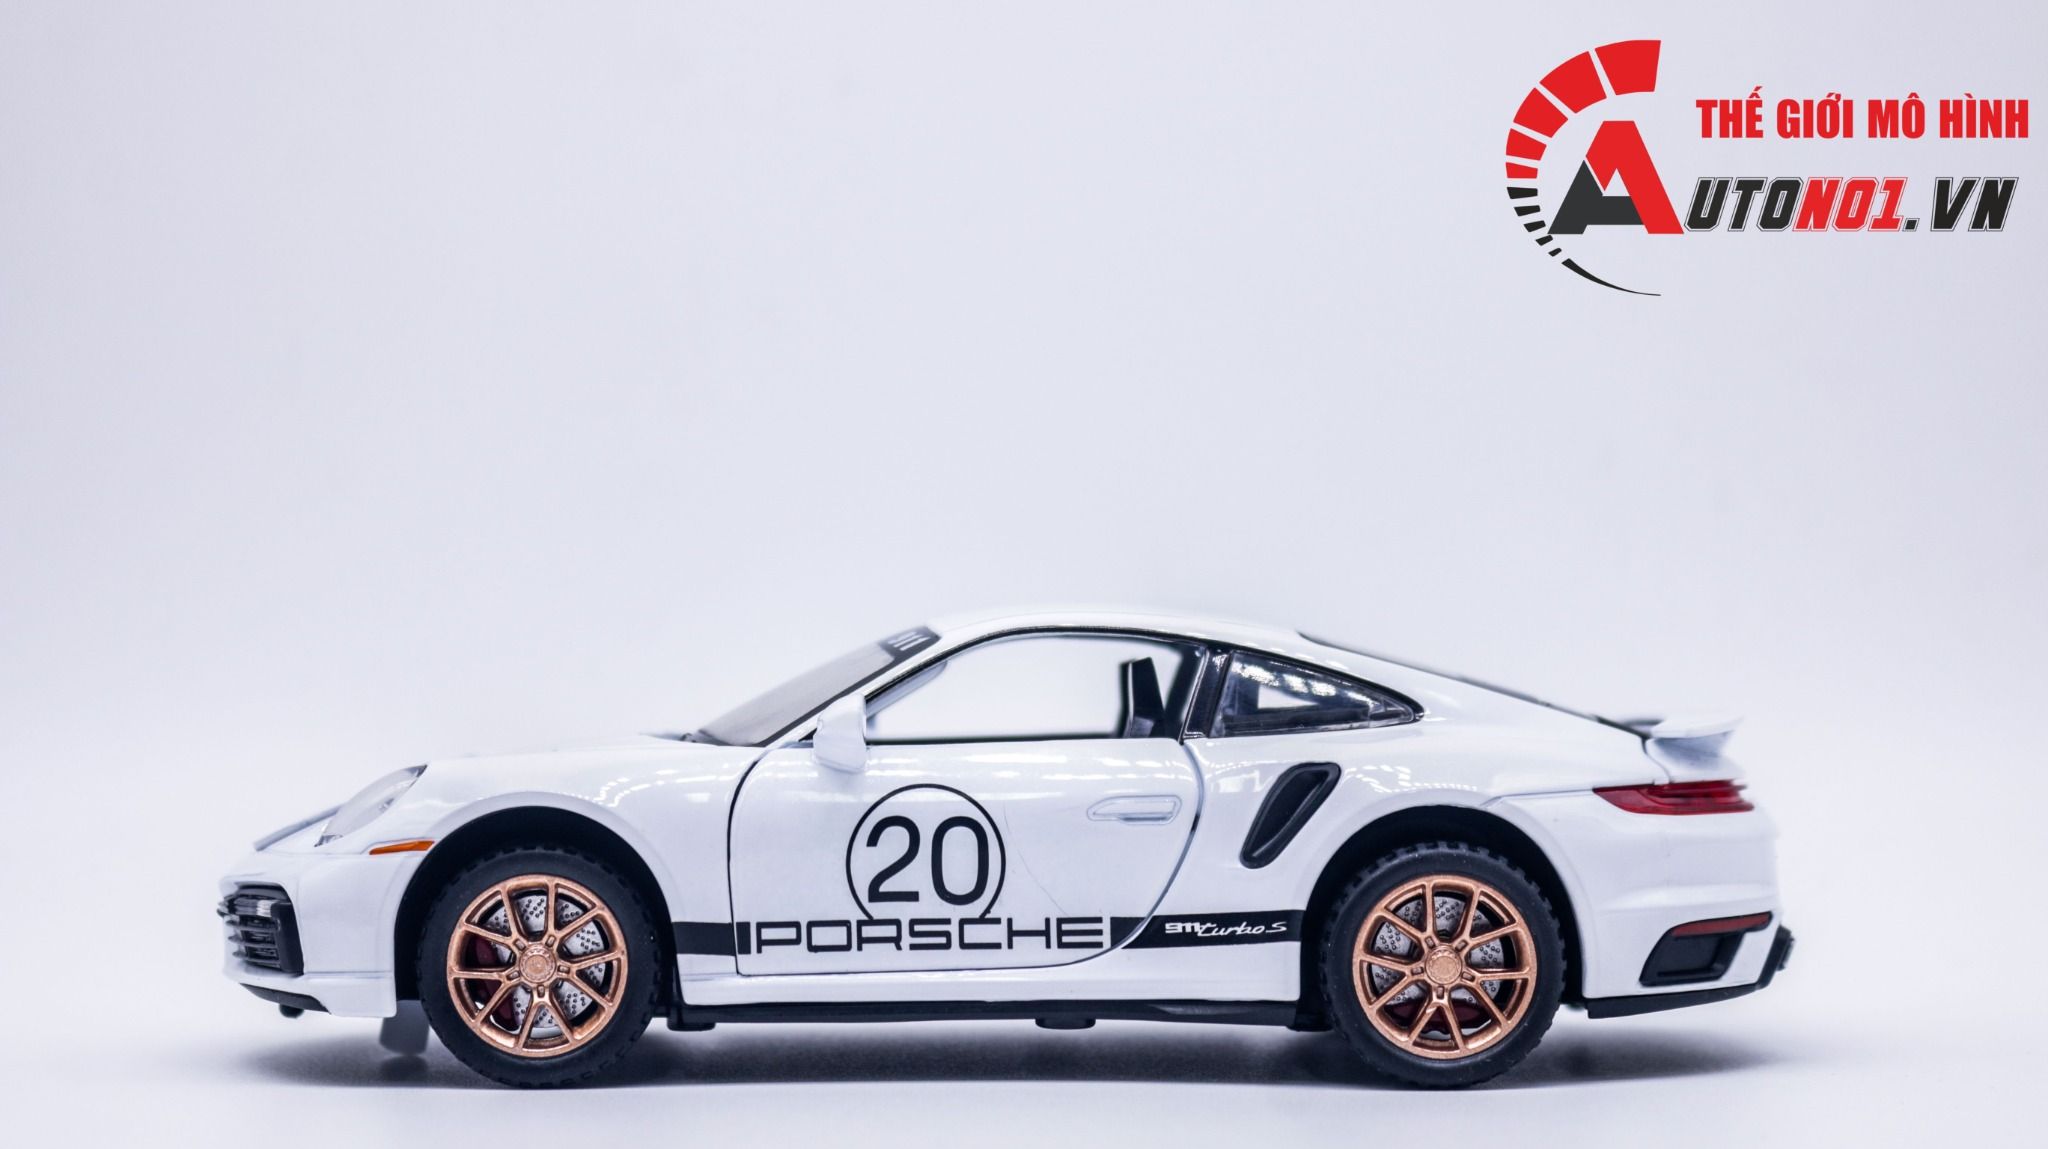  Mô hình xe Porsche 911 Turbo S full open , có đèn và âm thanh tỉ lệ 1:32 Miniauto OT351 